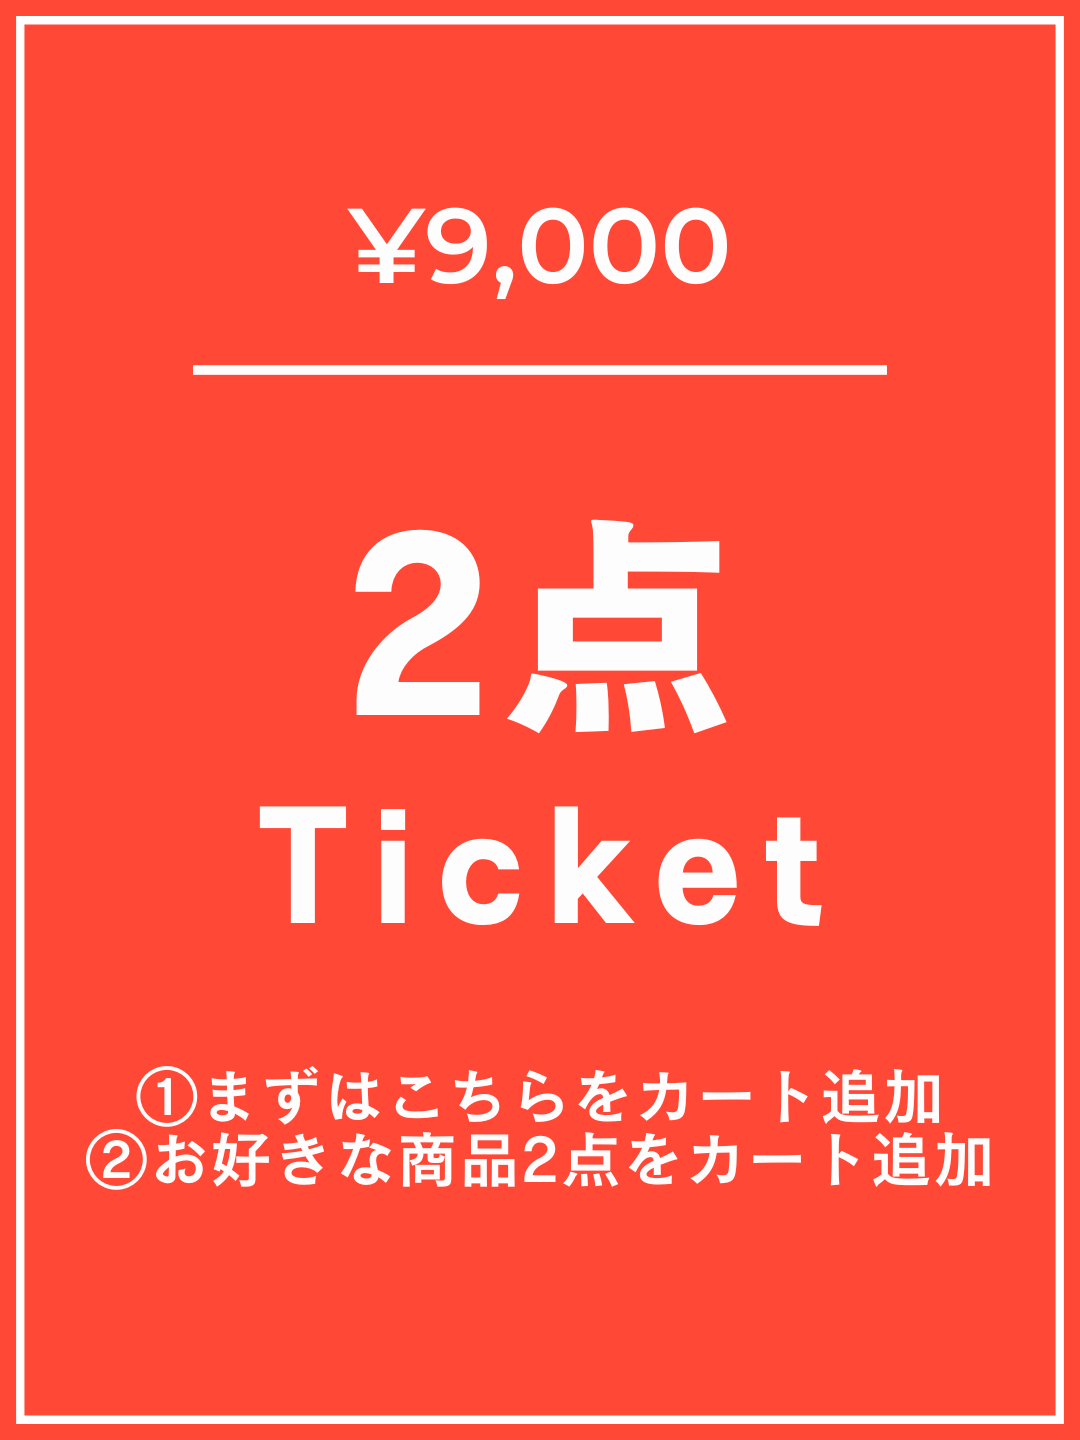 【1番初めにこちらをカートイン】¥9,000チケット